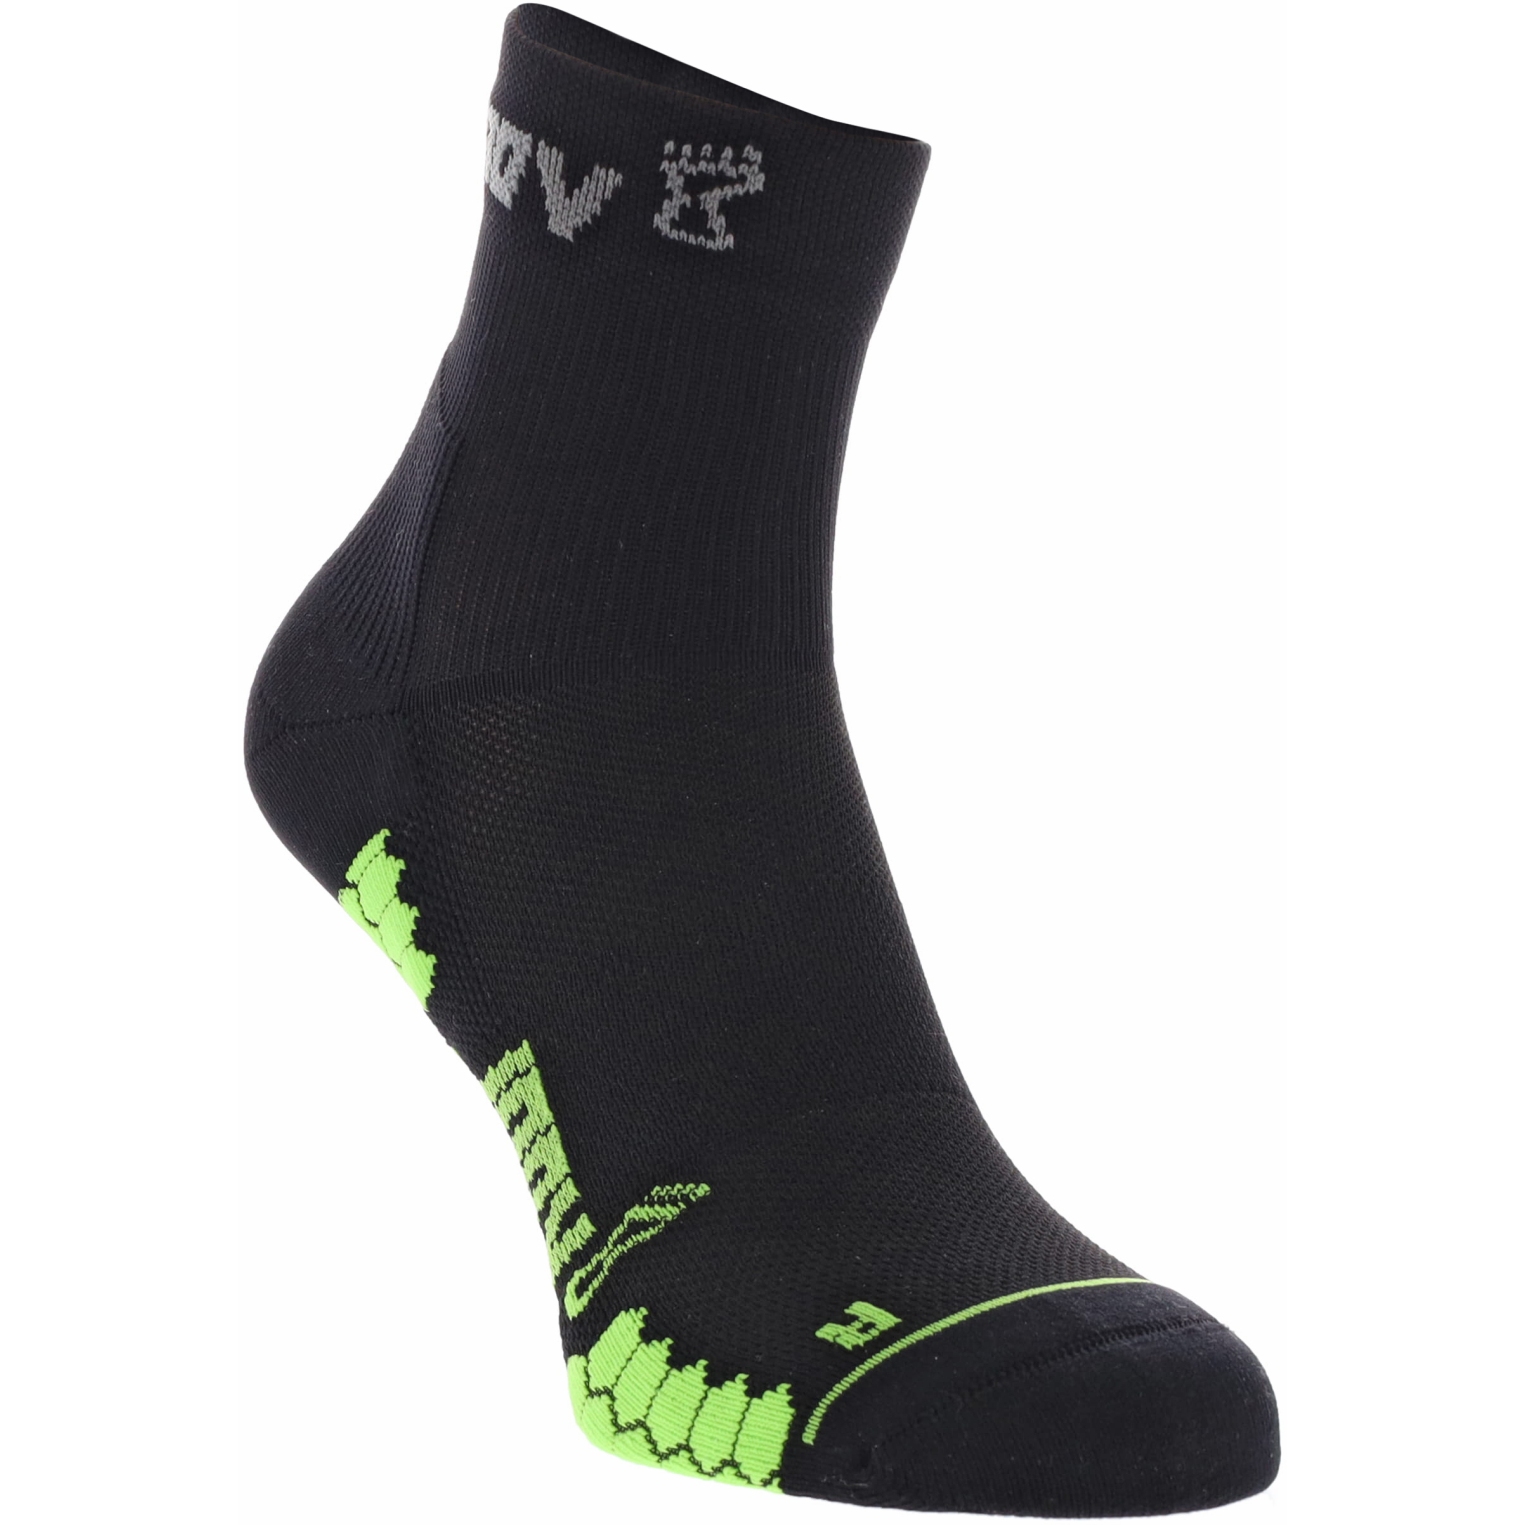 Produktbild von Inov-8 TrailFly Socken Mid (2 Paar) - schwarz/grün